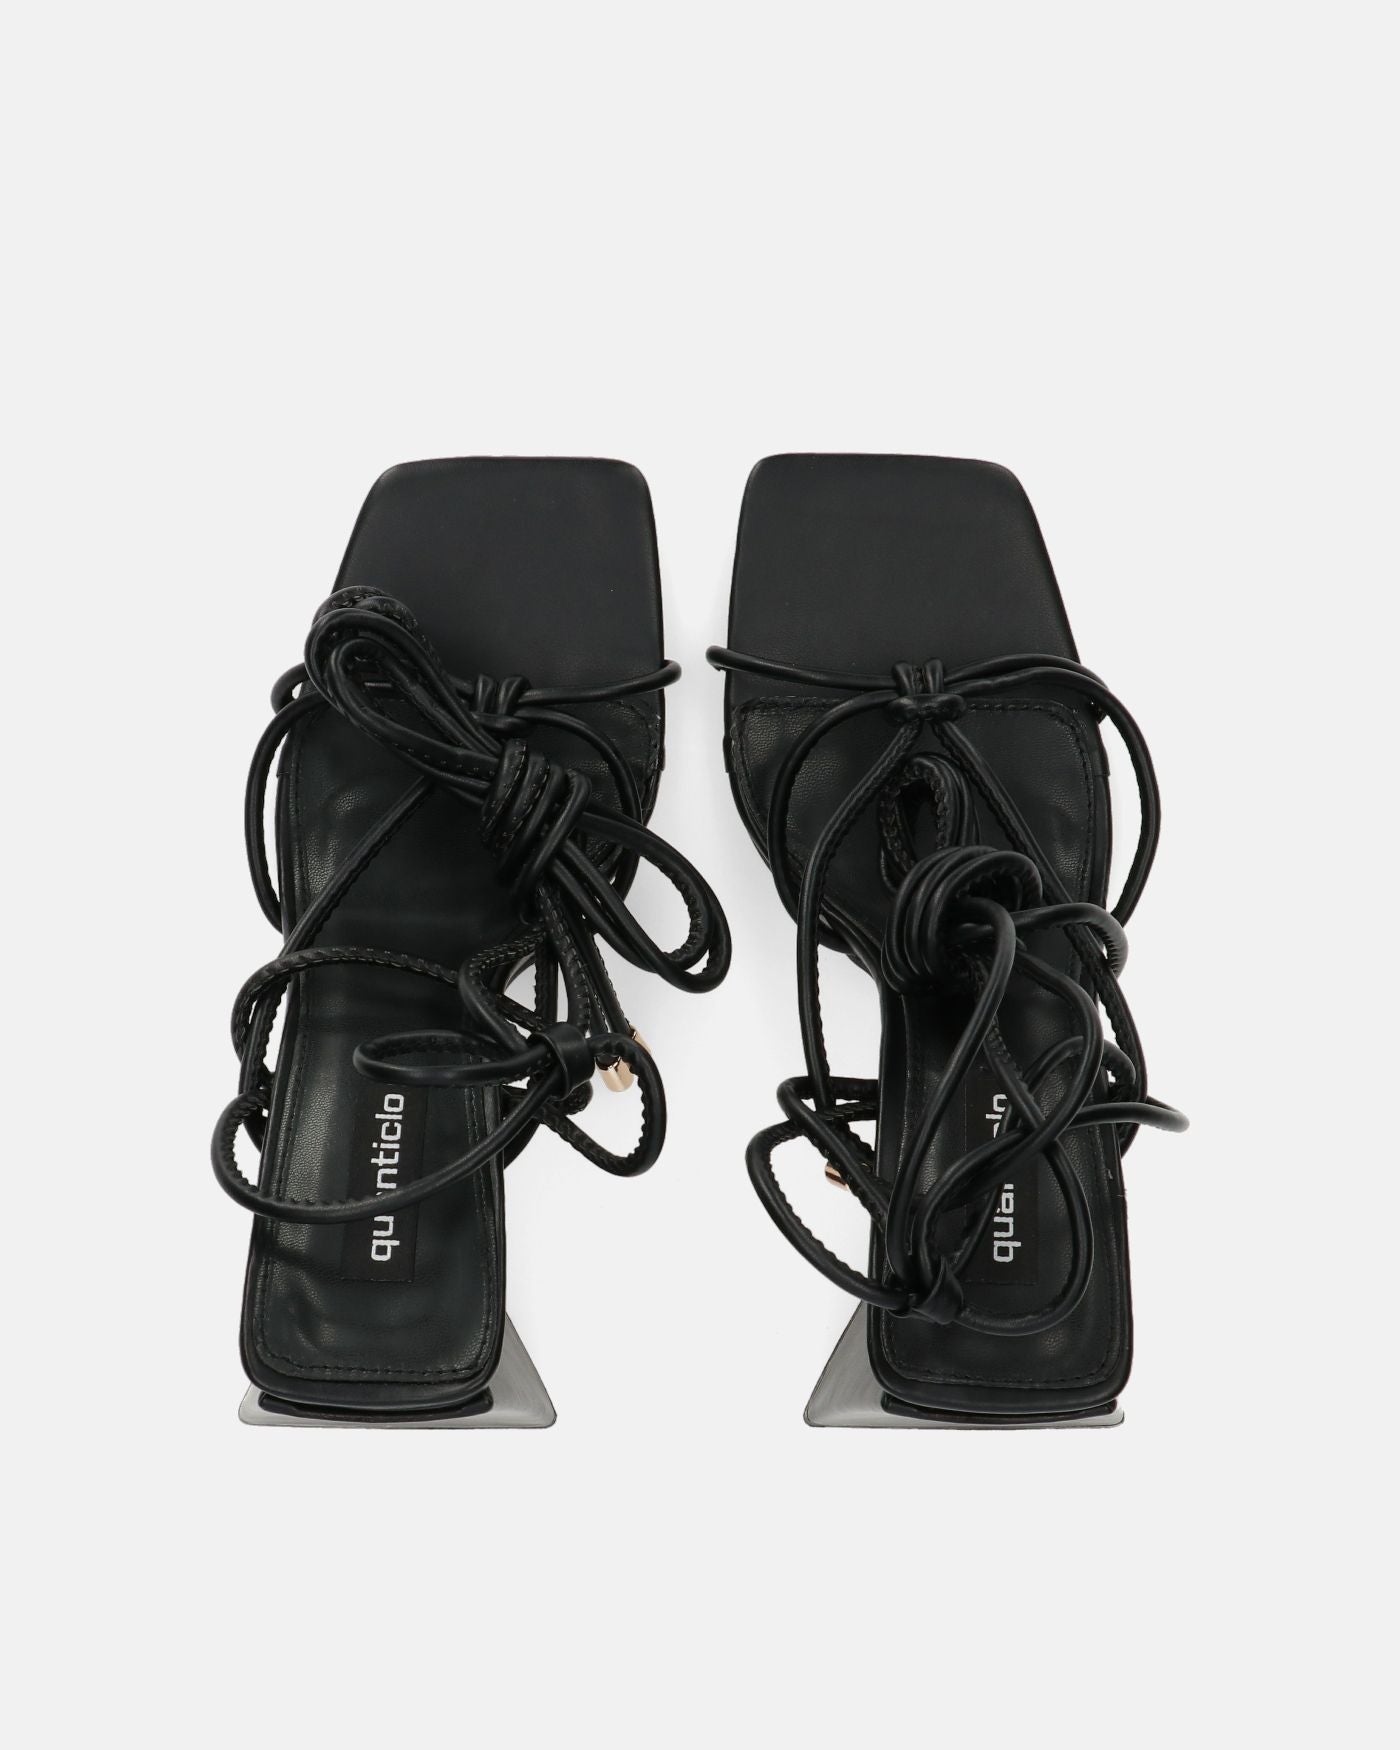 LUCE - sandalias negras con tacón y cordones